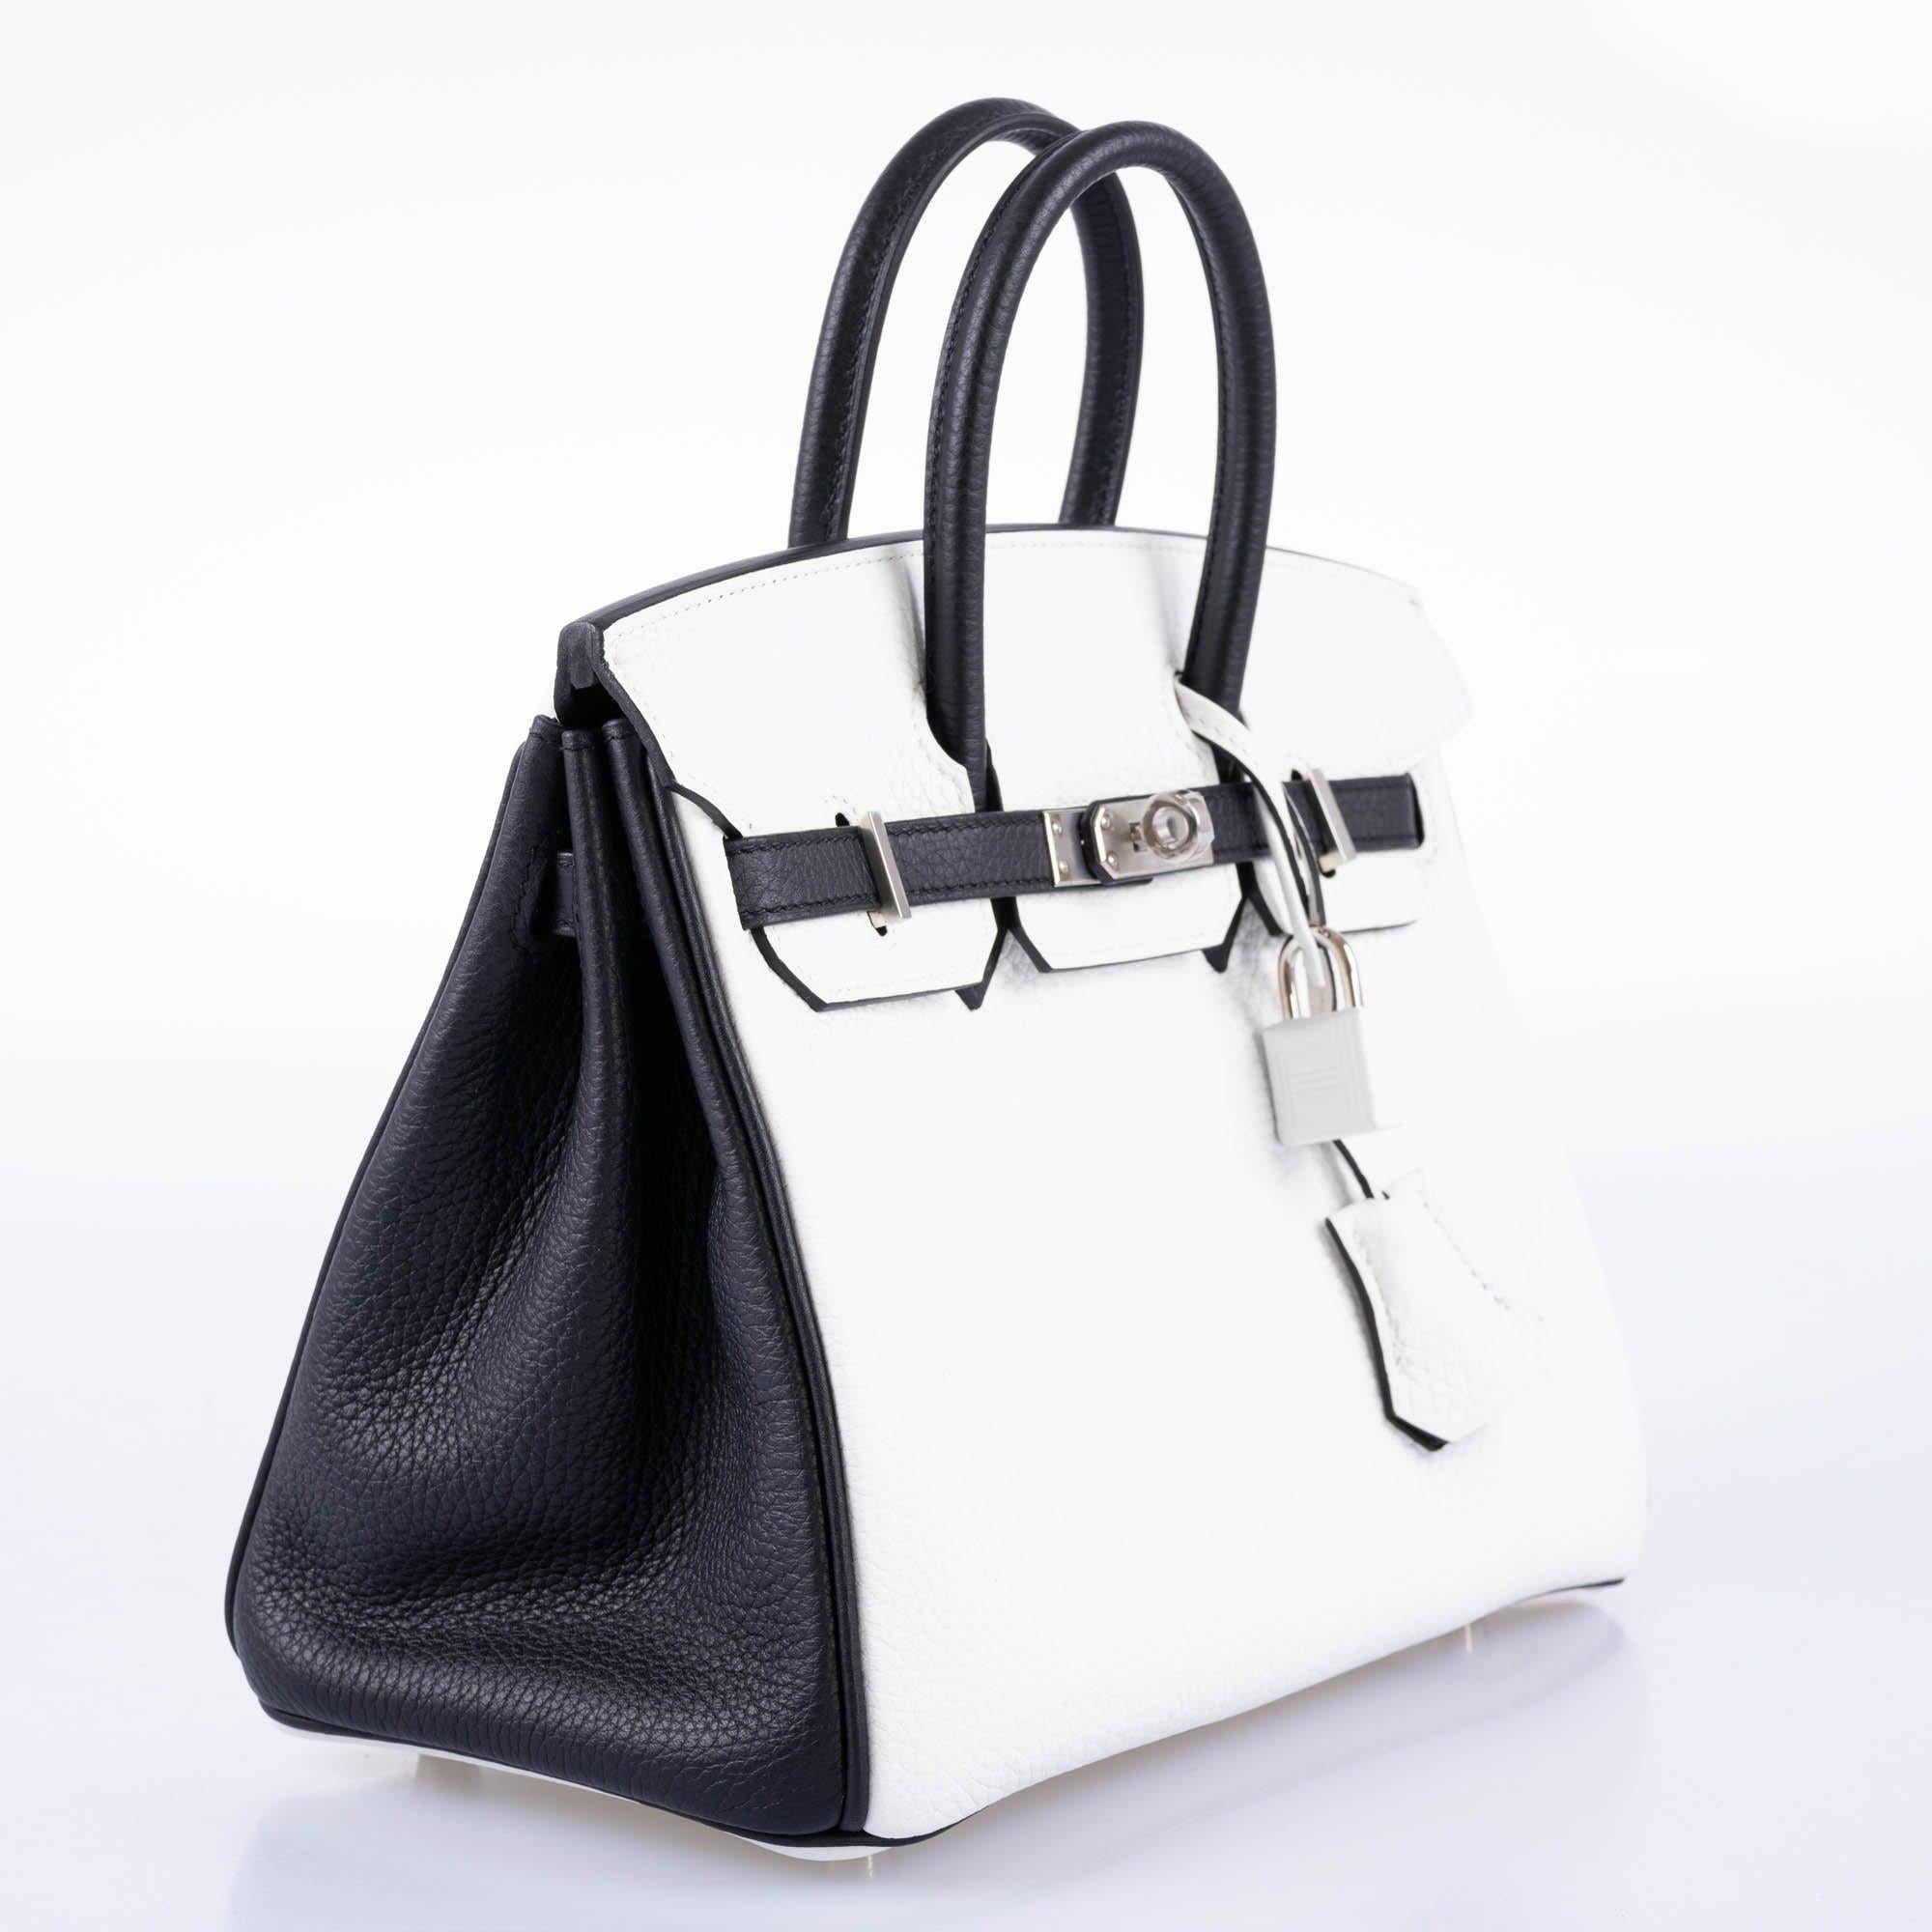 Hermès HSS Birkin 25 Black and White Togo with Palladium Hardware